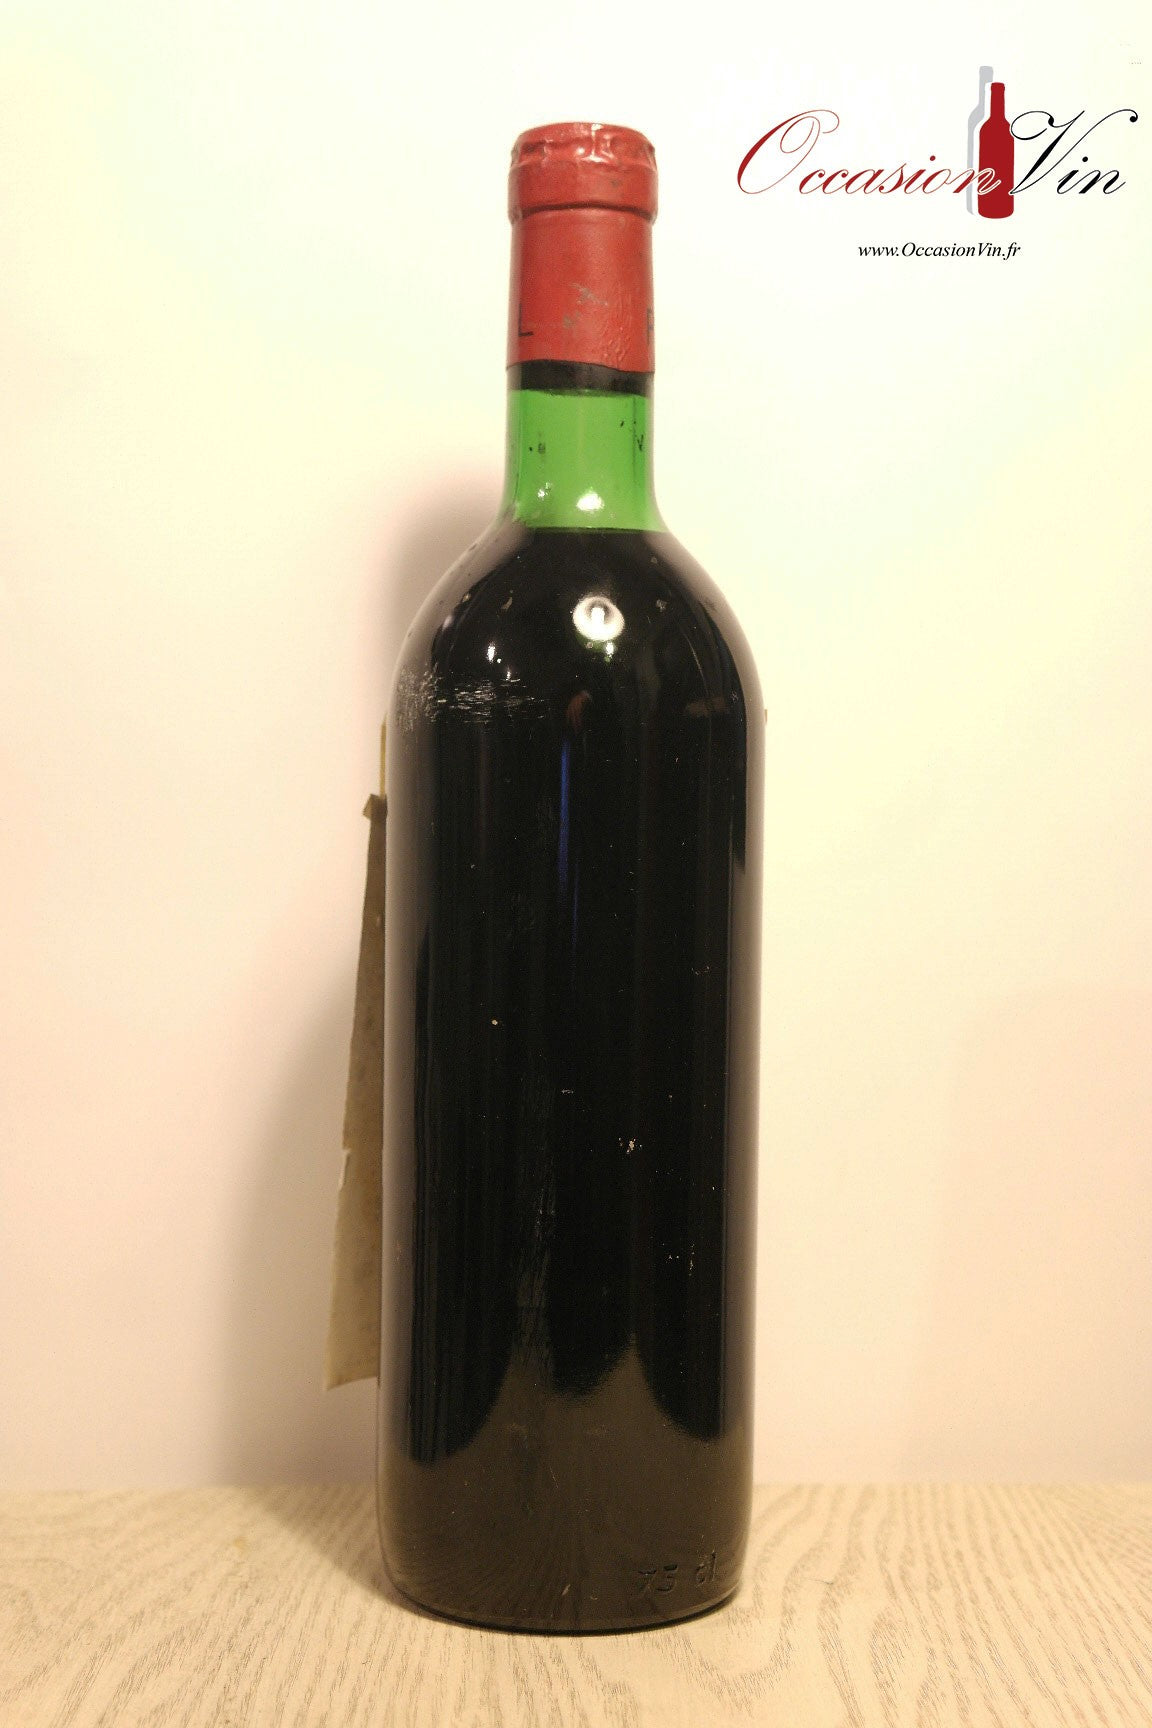 Château Haut-Tropchaud Vin 1976